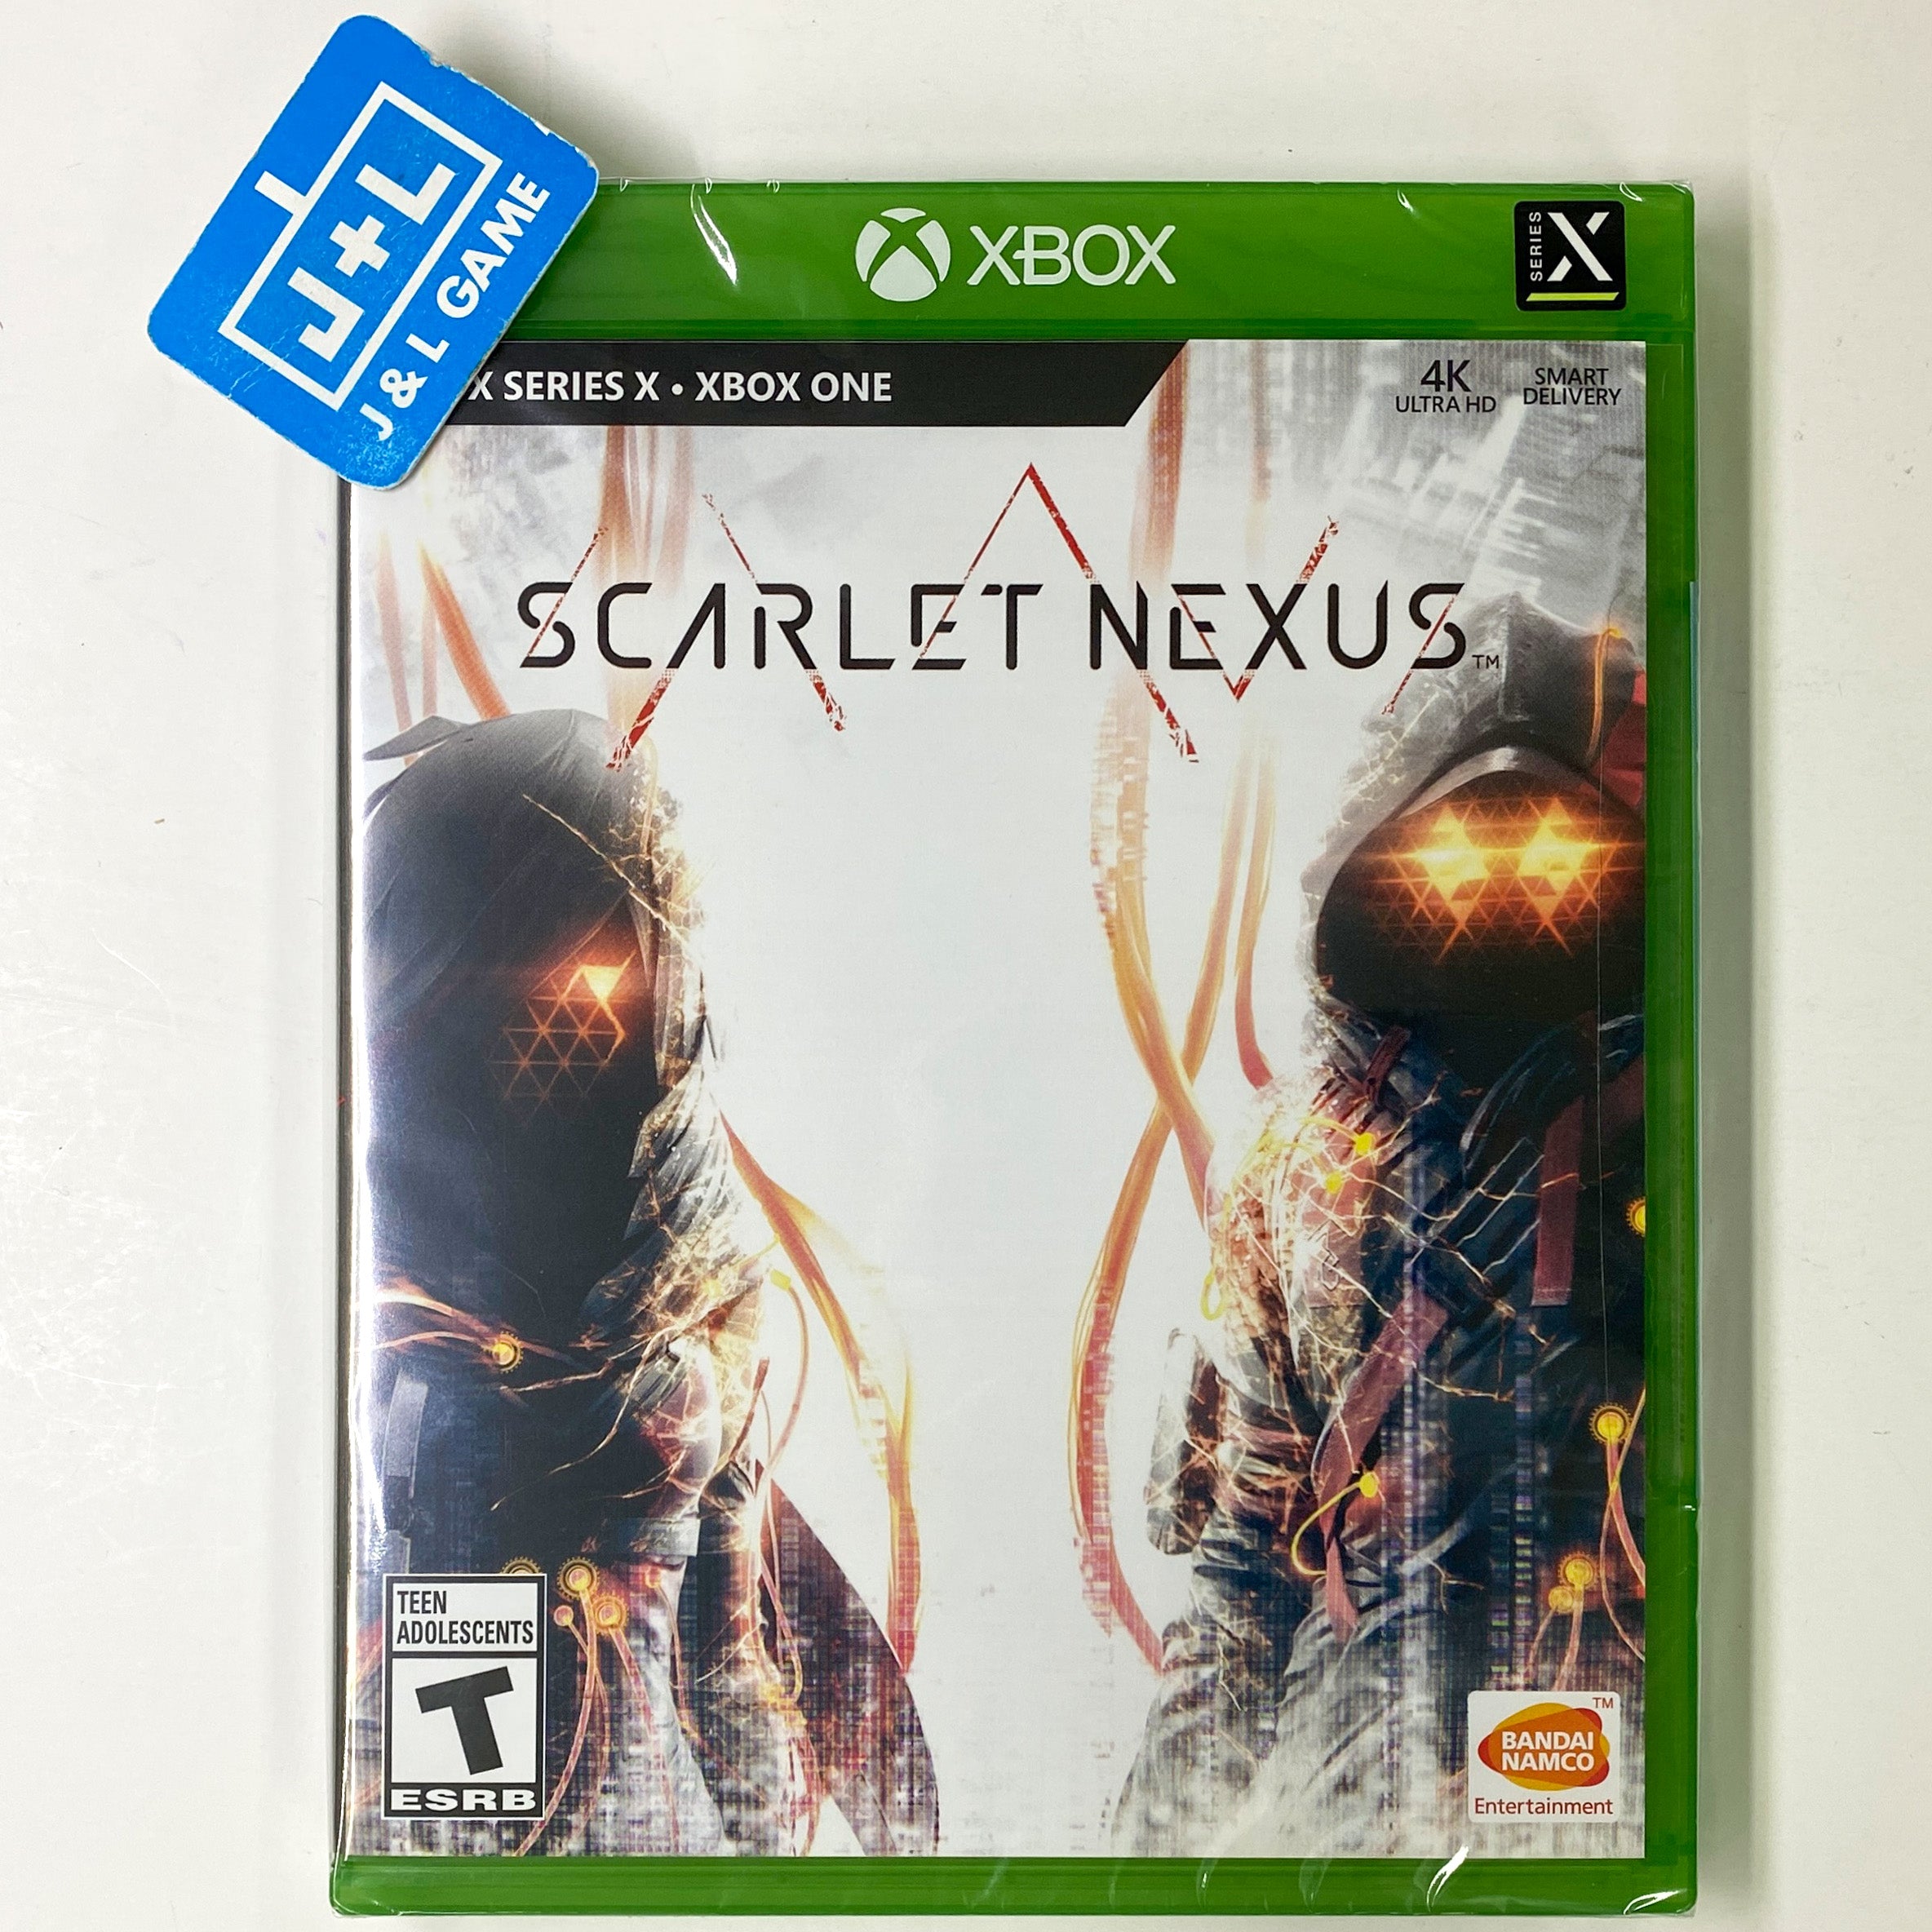 SCARLET NEXUS - (XSX) Xbox Series X Video Games BANDAI NAMCO Entertainment   